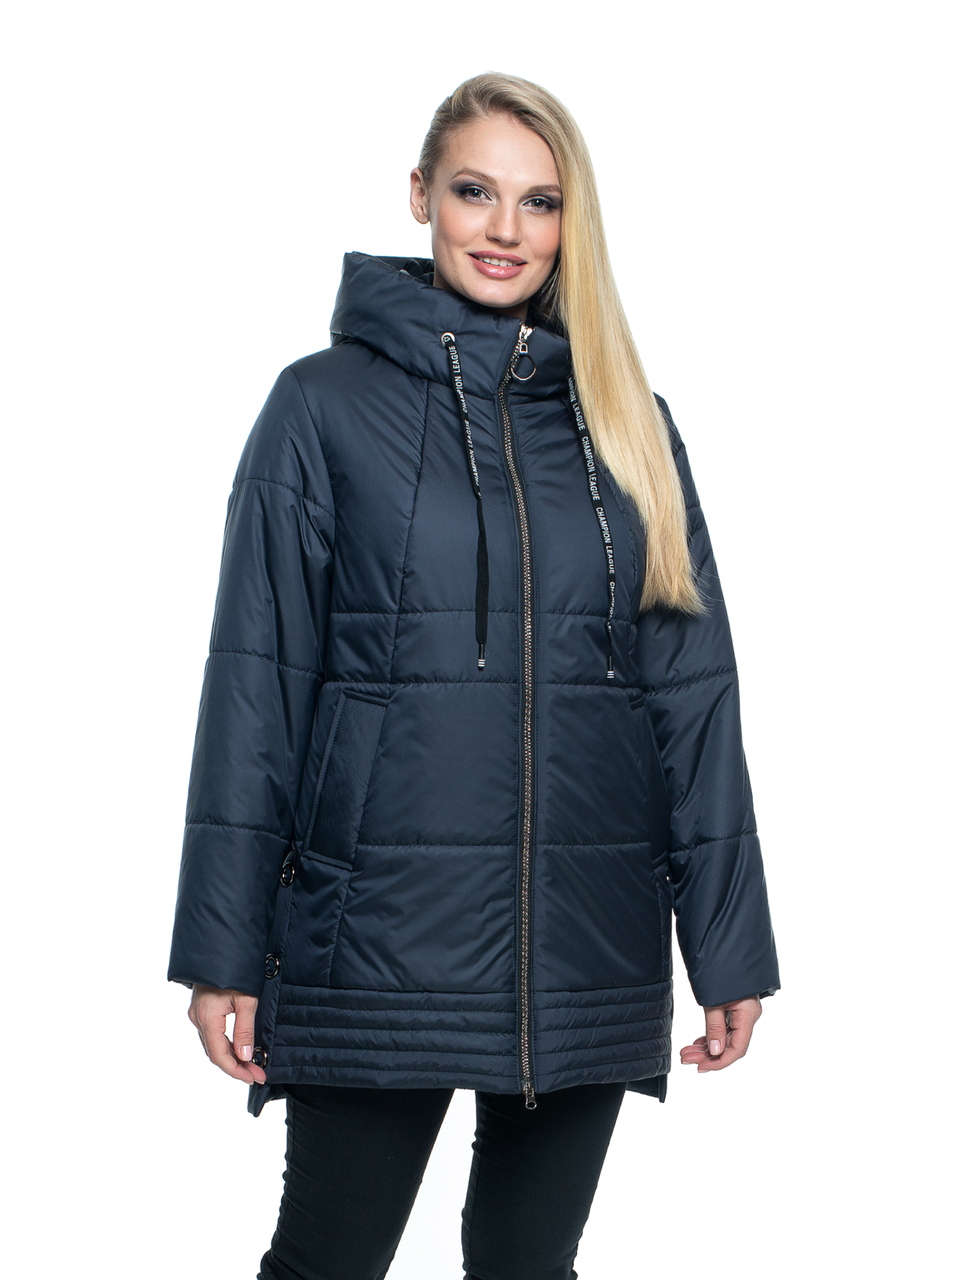 Валберис верхняя женская одежда больших размеров зима стоимость франшизы евроавто